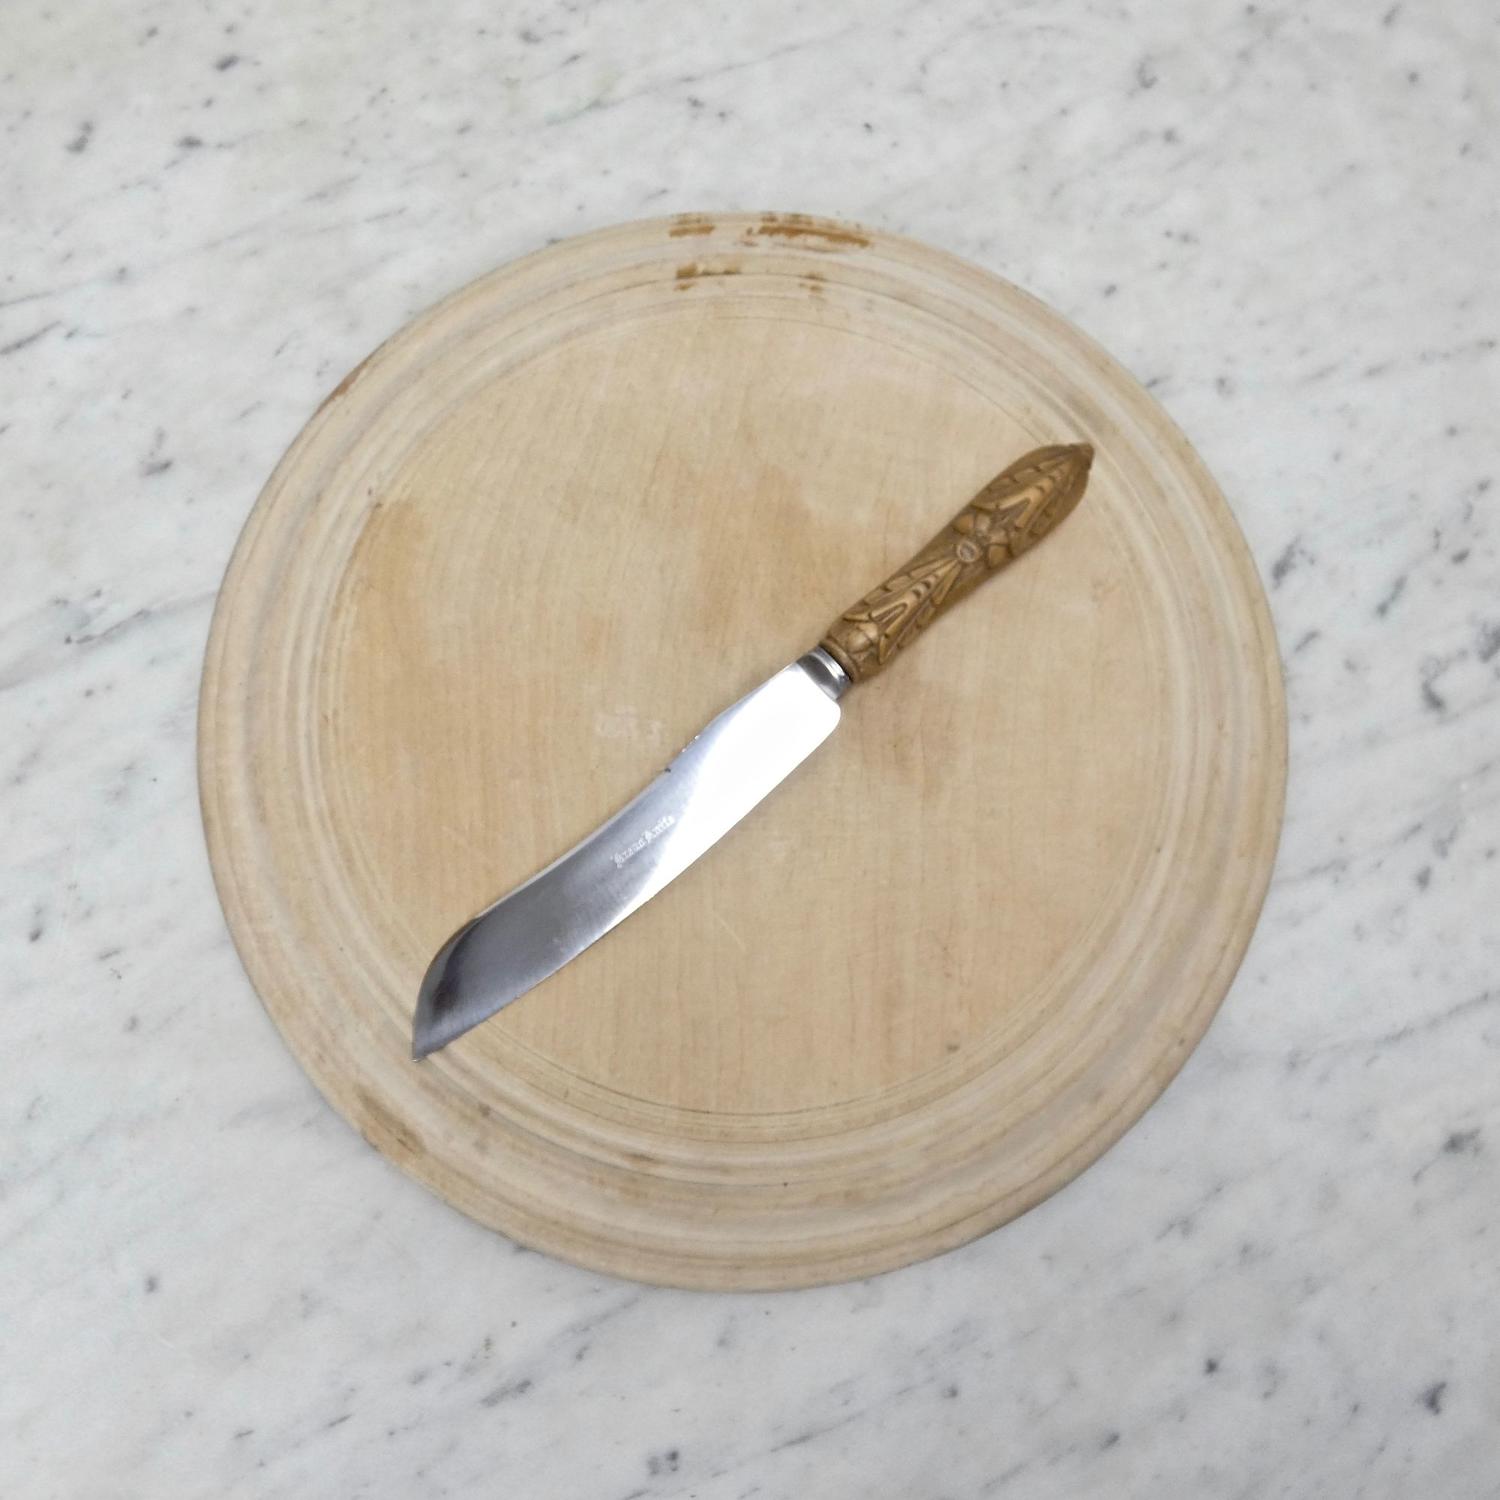 'Butler' bread knife